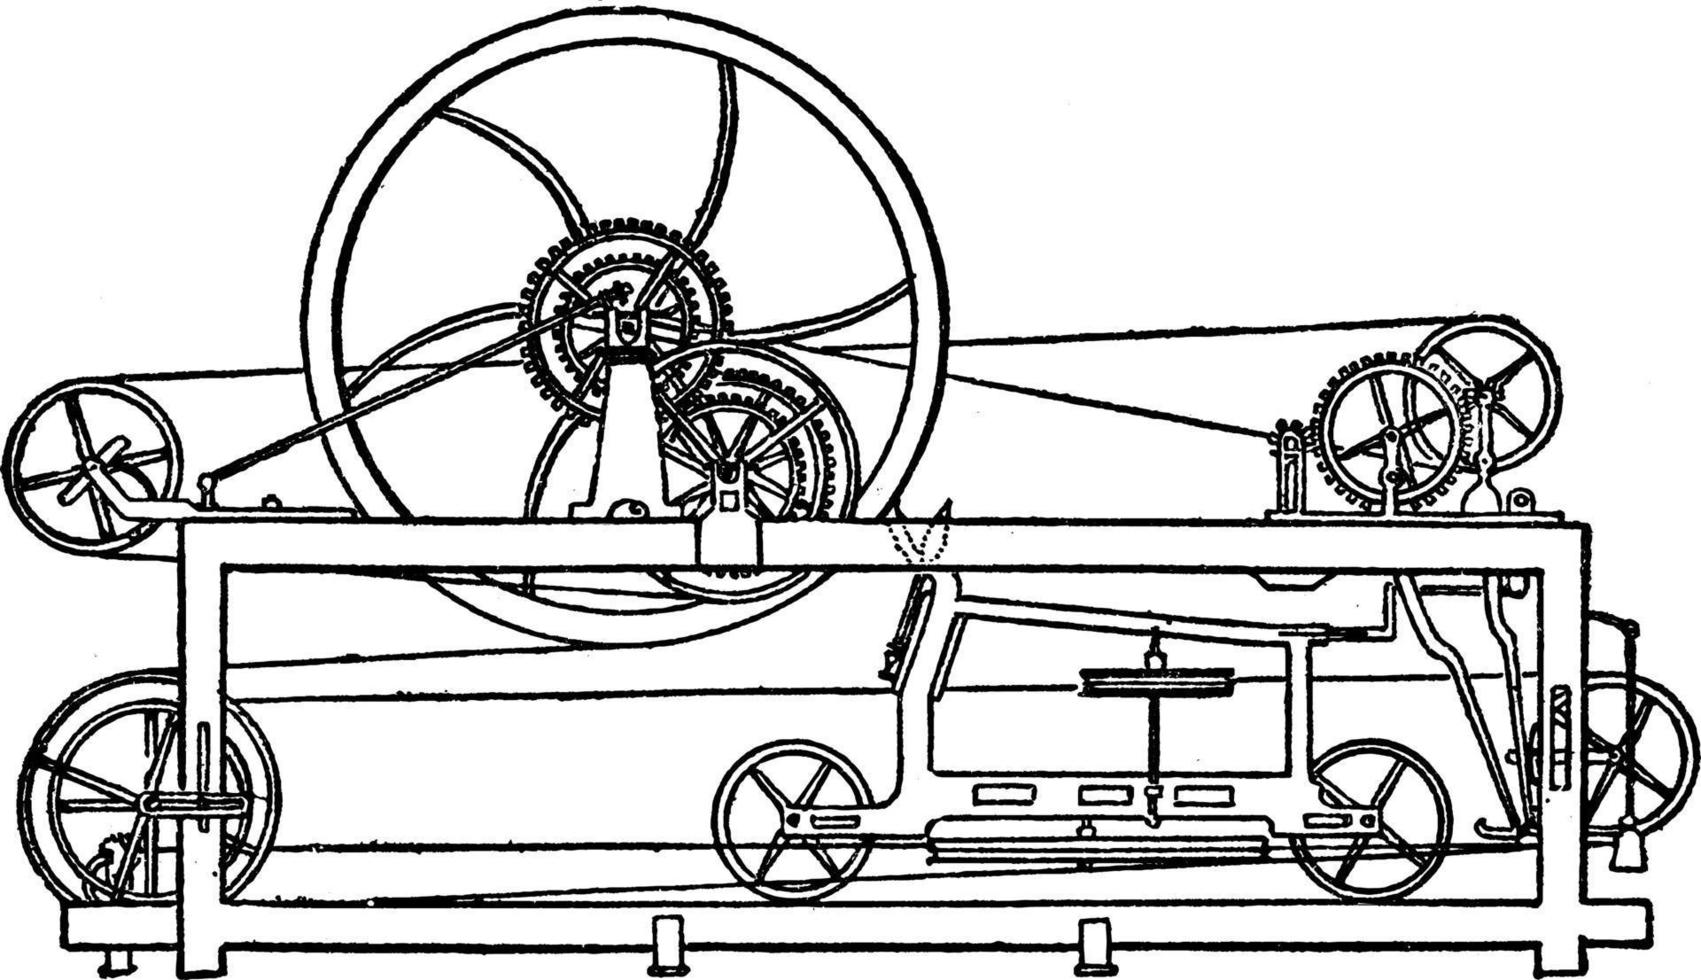 spinning Mule, vintage illustration. vector